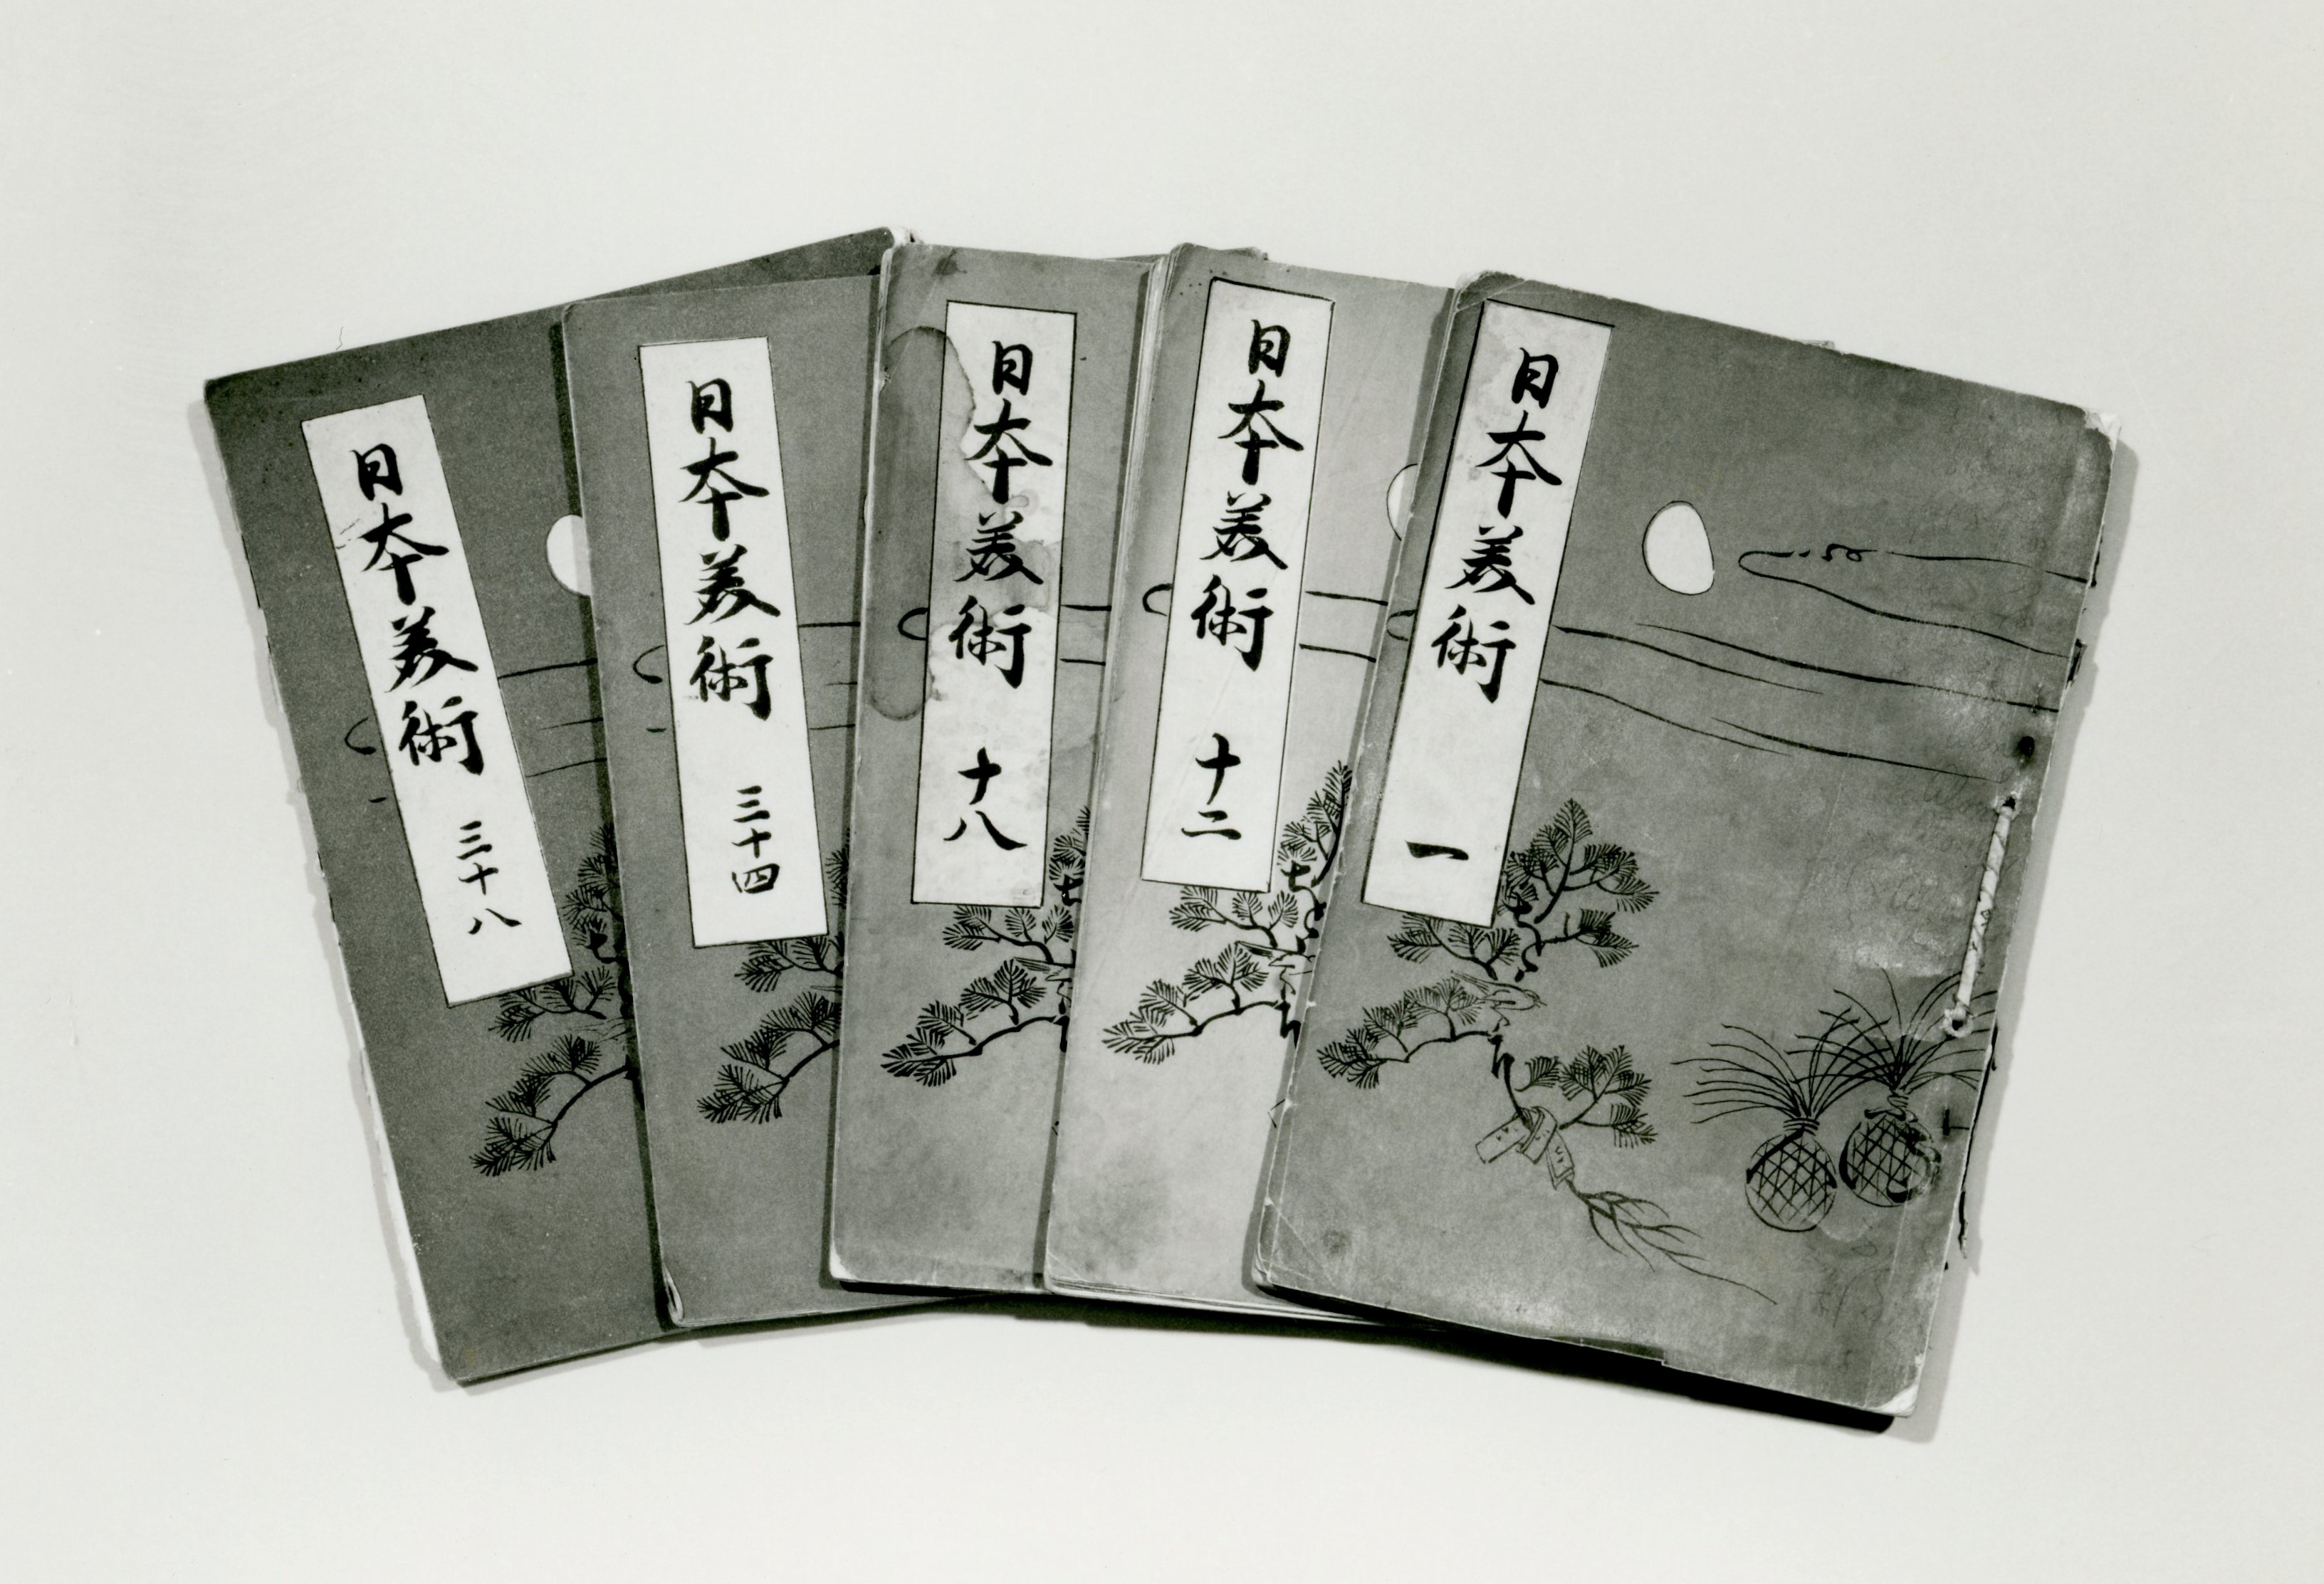 明治31(1898)年10月に創刊された『 日本美術 』